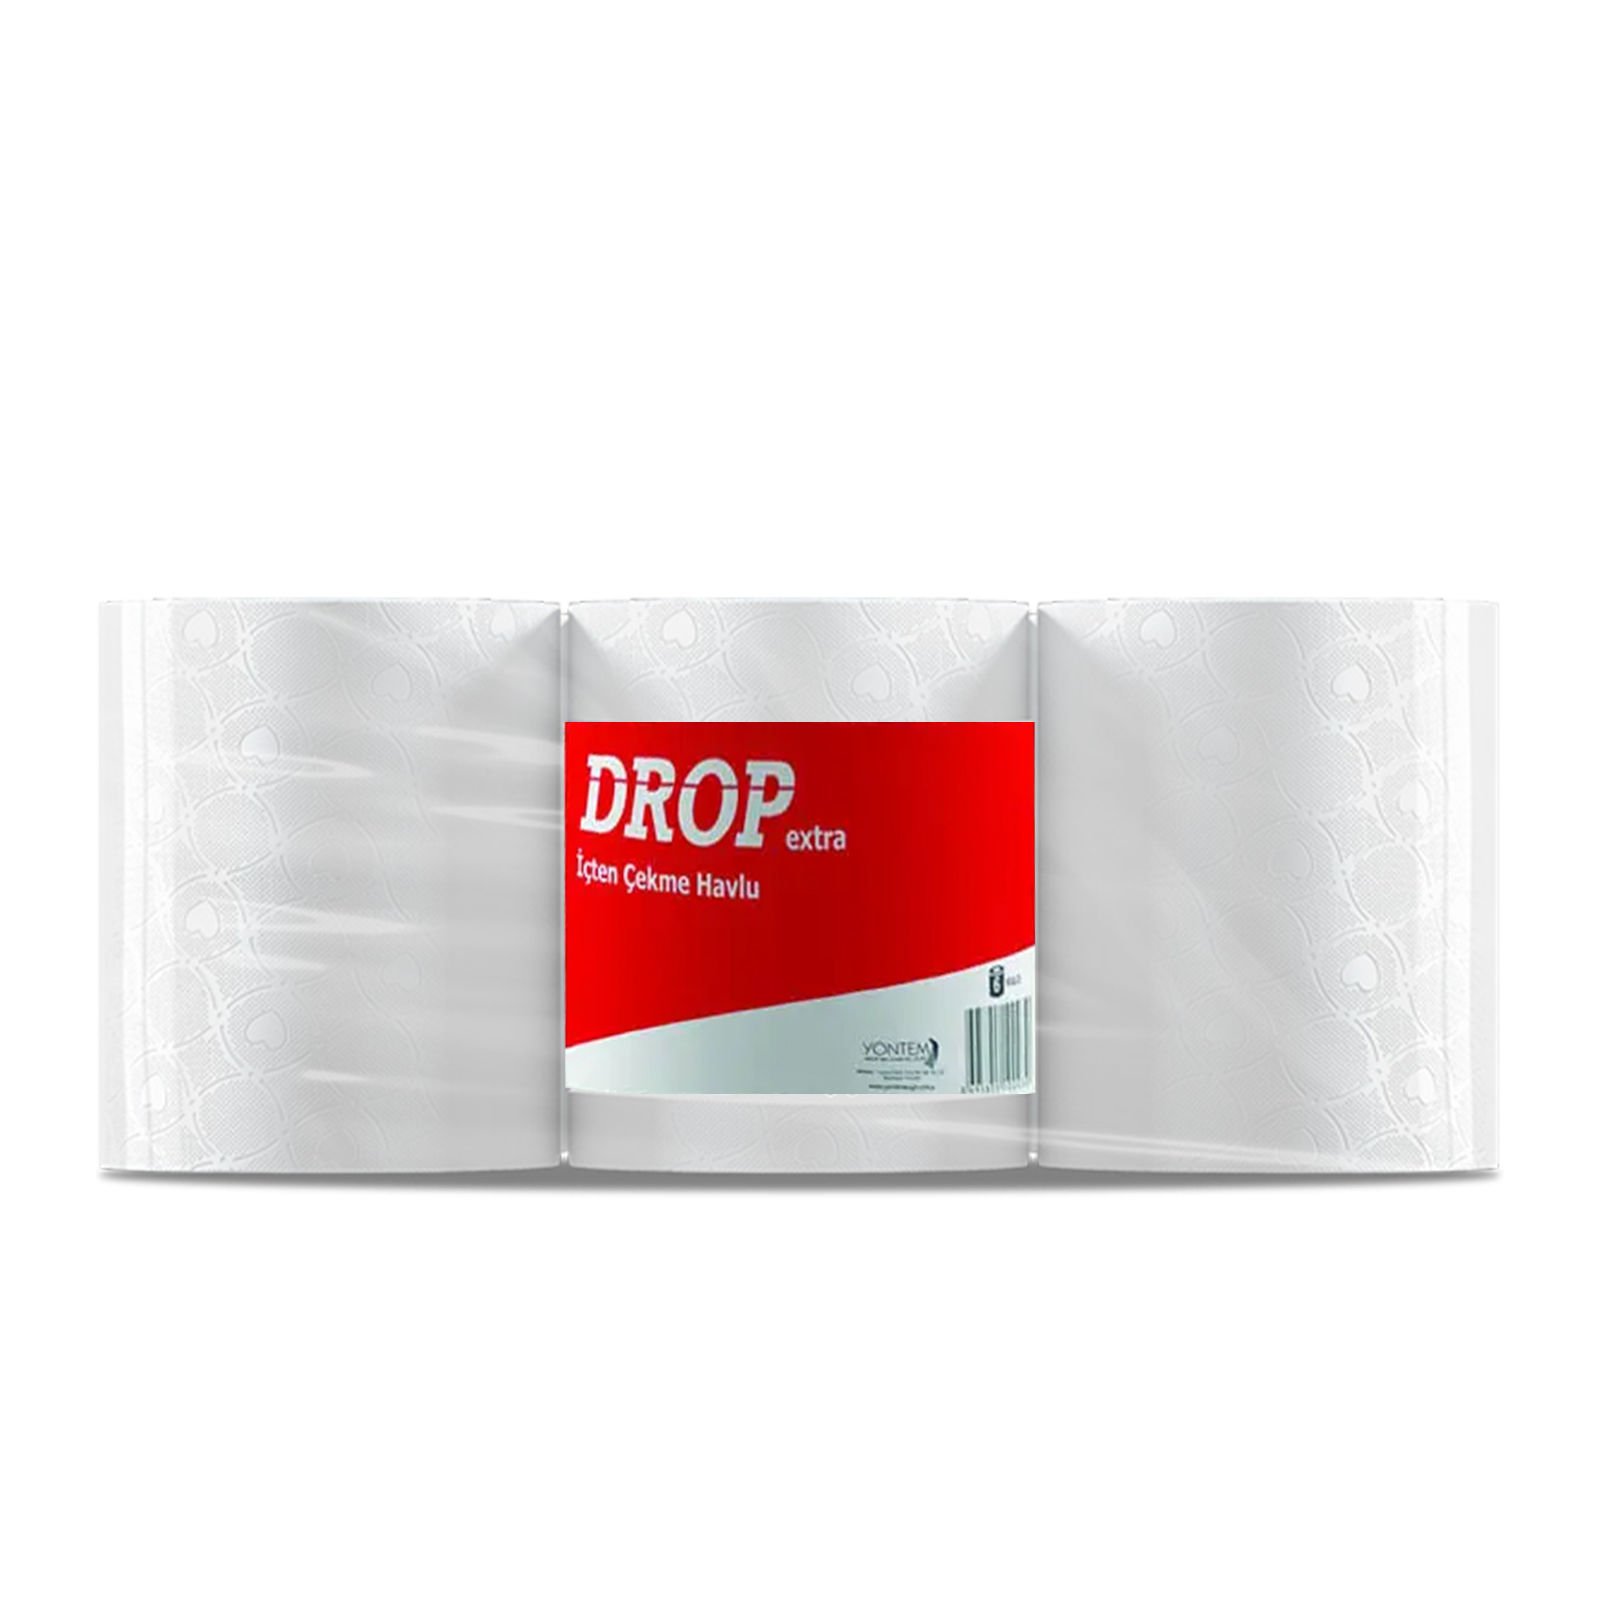 Drop İçten Çekme Havlu Kağıt 6'lı 3,5 kg